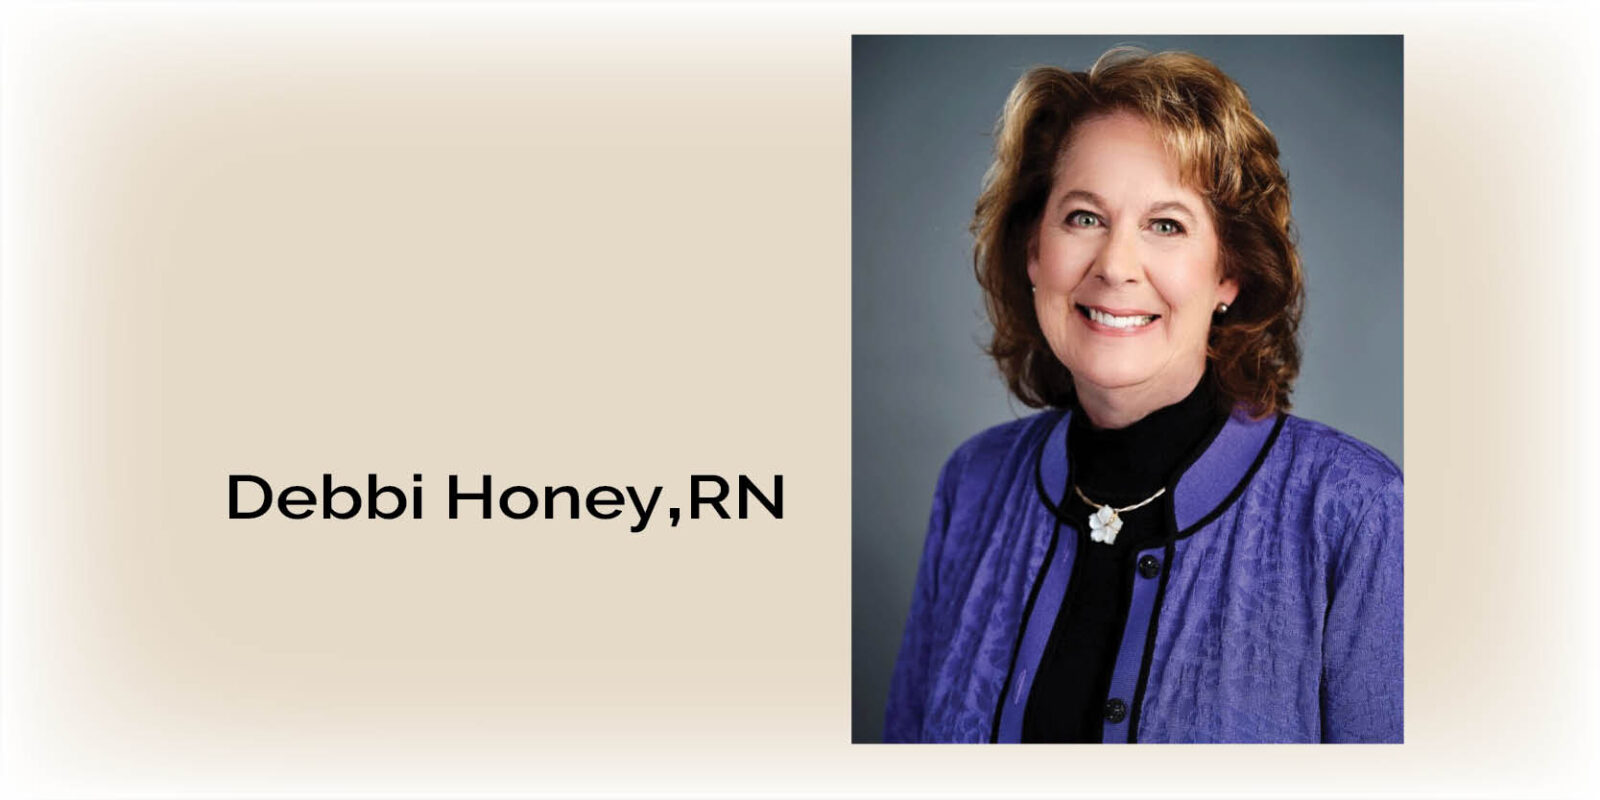 Debbi Honey di Covenant Health è riconosciuta come esperta in materia di sicurezza del paziente